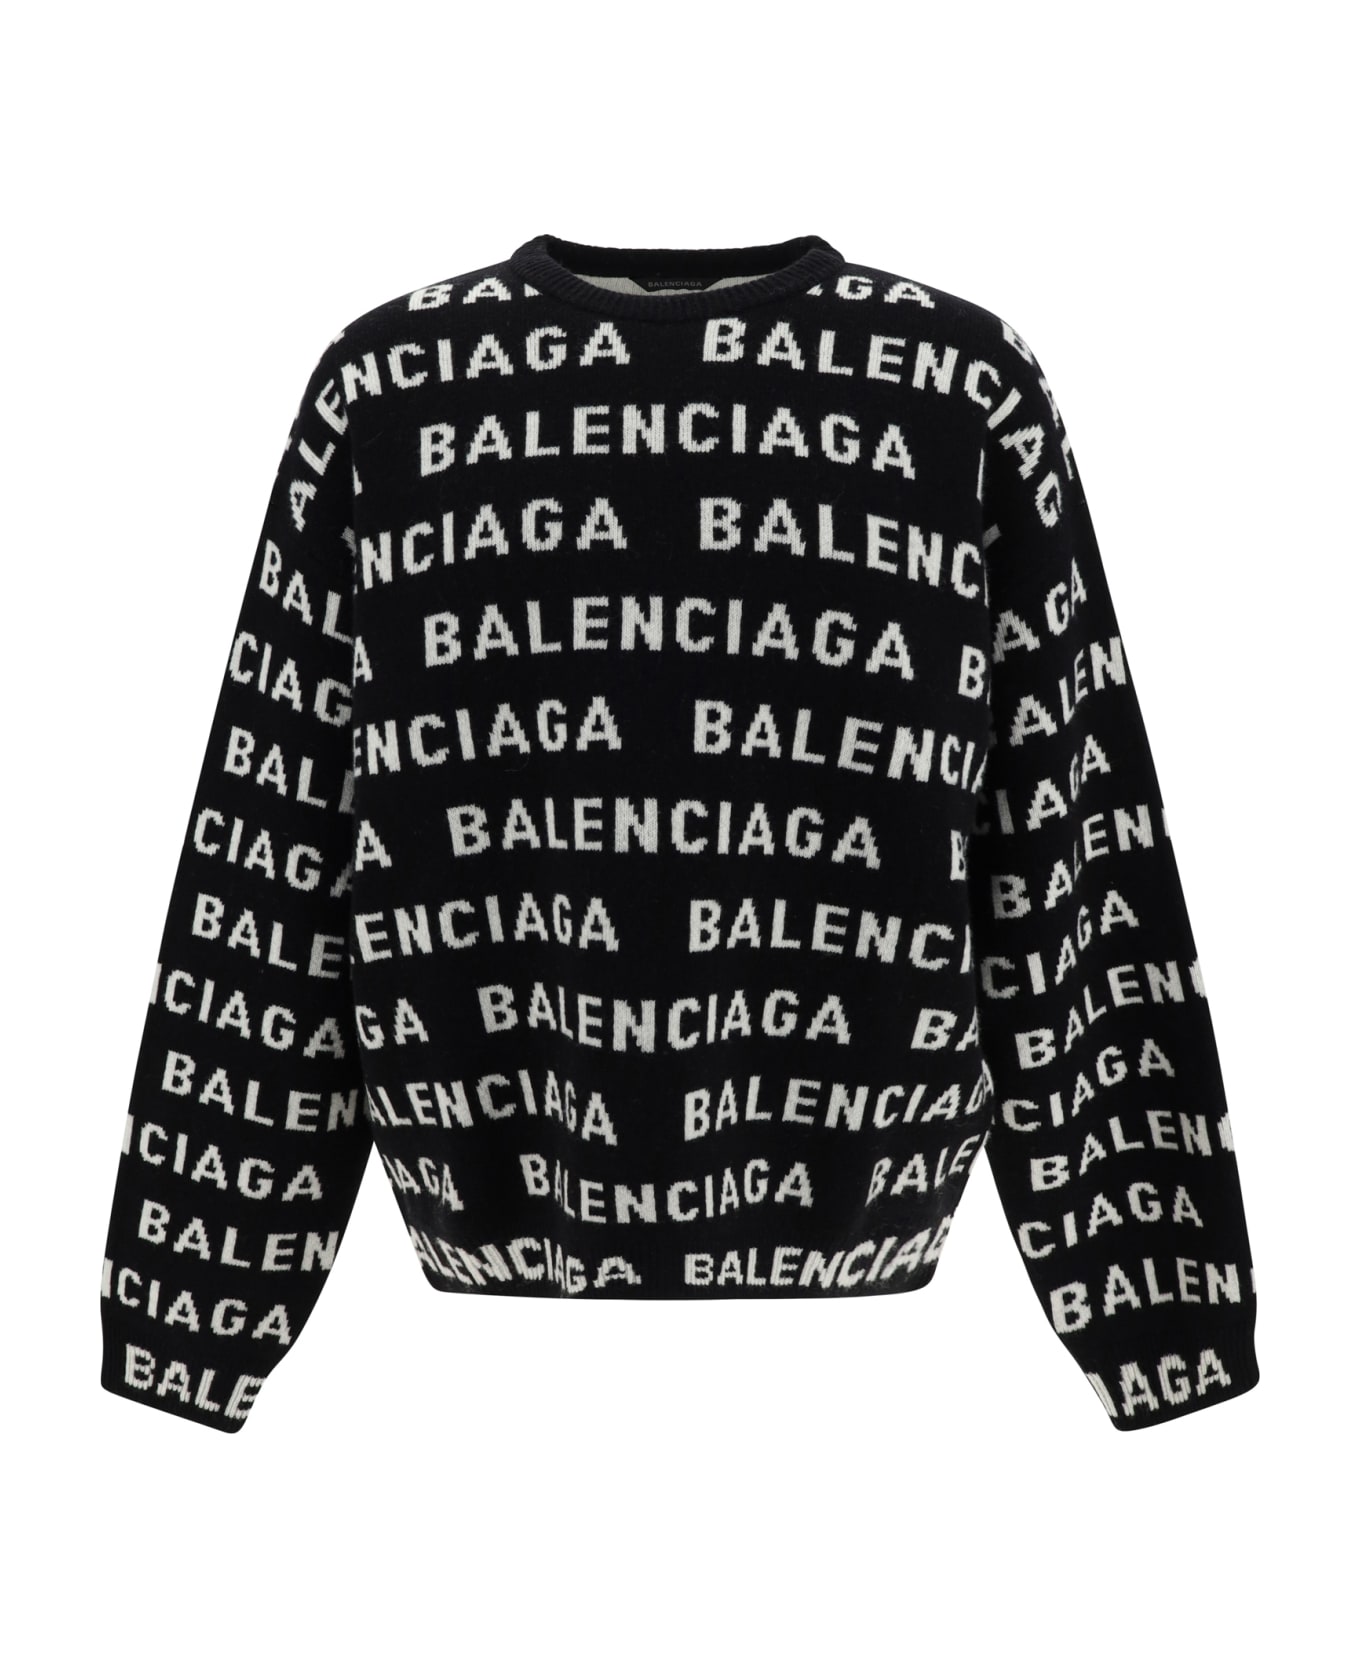 Balenciaga Sweater - Black/white ニットウェア